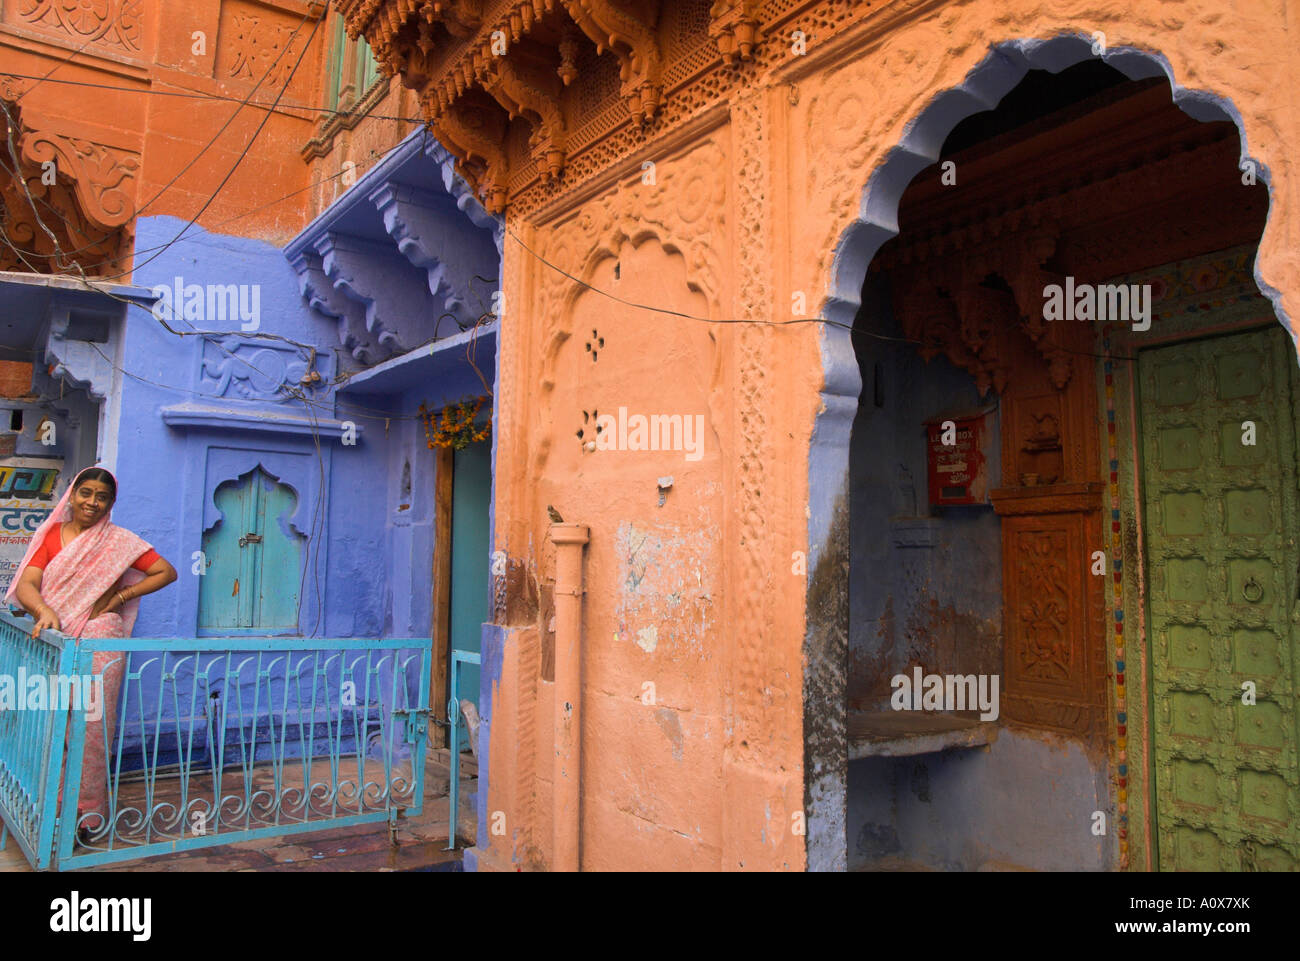 Indien Rajasthan Jodhpur die blaue Stadt alte Stadt typischen alten residencial Havelis mit Frau in sar in blau und Ocker Farbe bemalt. Stockfoto